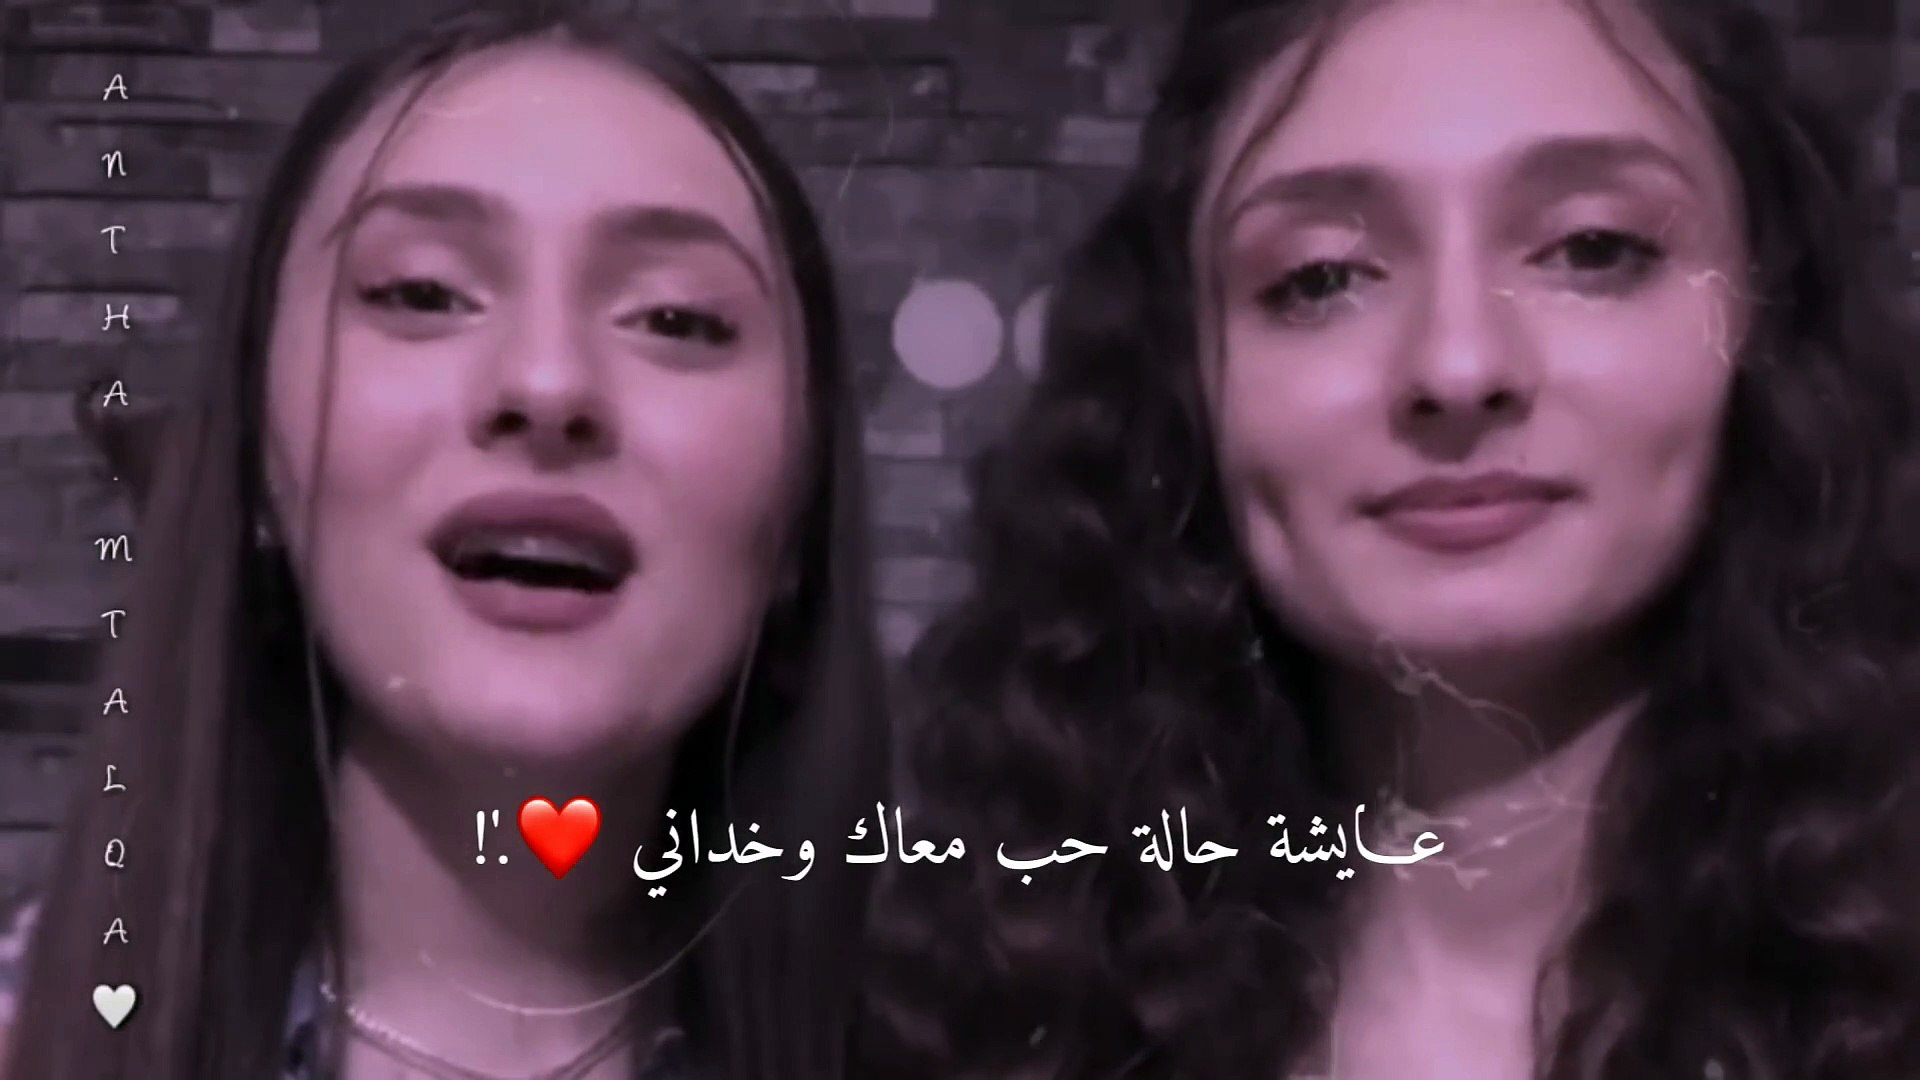 التوأم التركي يغنون اغنية عايشة حالة حب إليسا العربي والتركي - video  Dailymotion